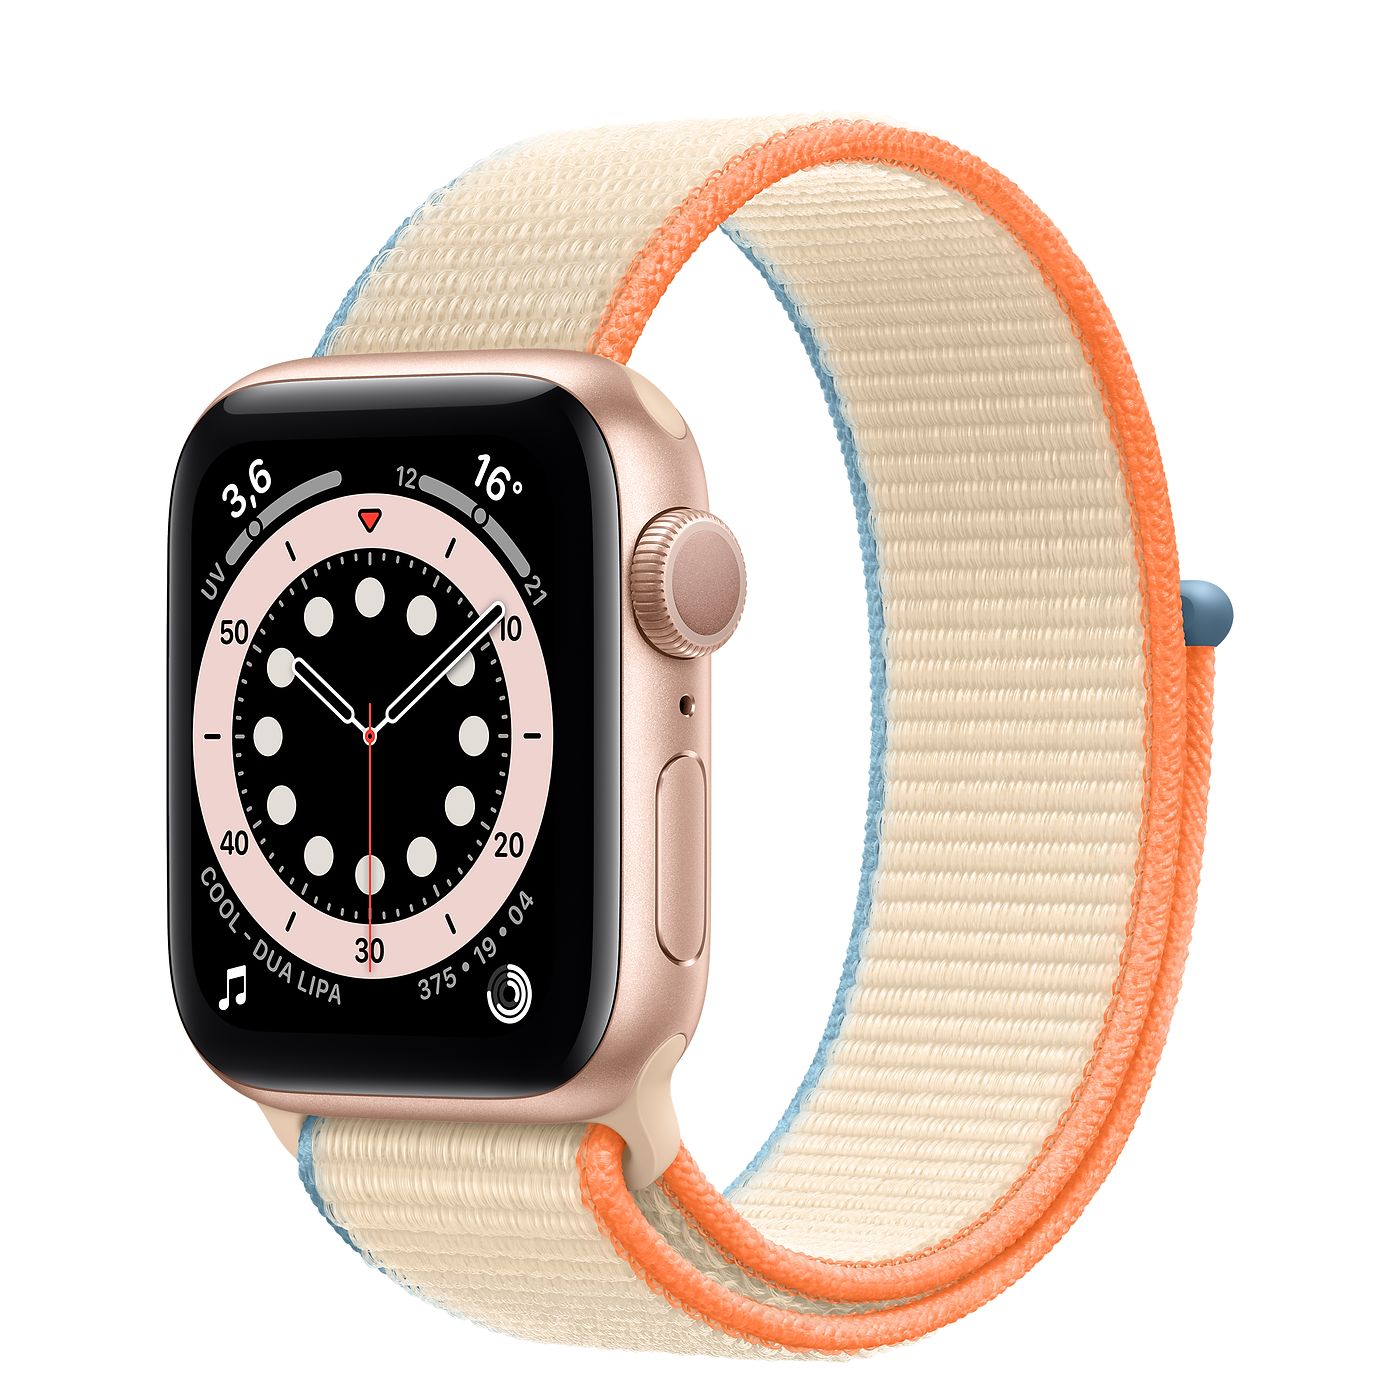 
                                    
                                Apple Watch 6, tutti i modelli di cinturino e cassa fra cui scegliere